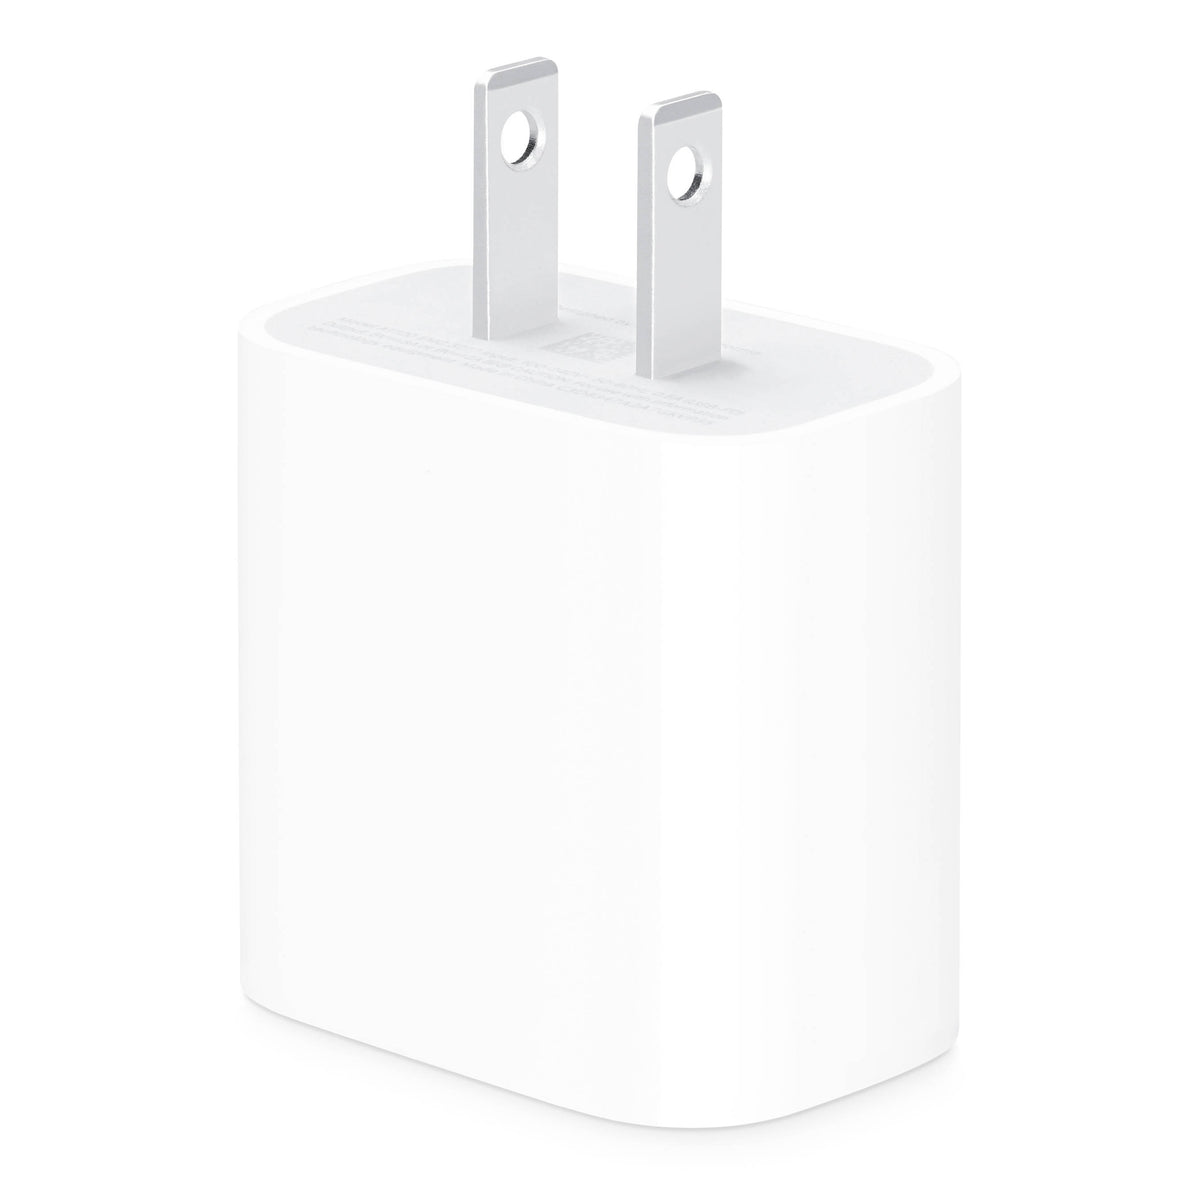 Adaptador de Corriente Apple MU7T2LL/A | USB tipo-C | Color Blanco - Multimax